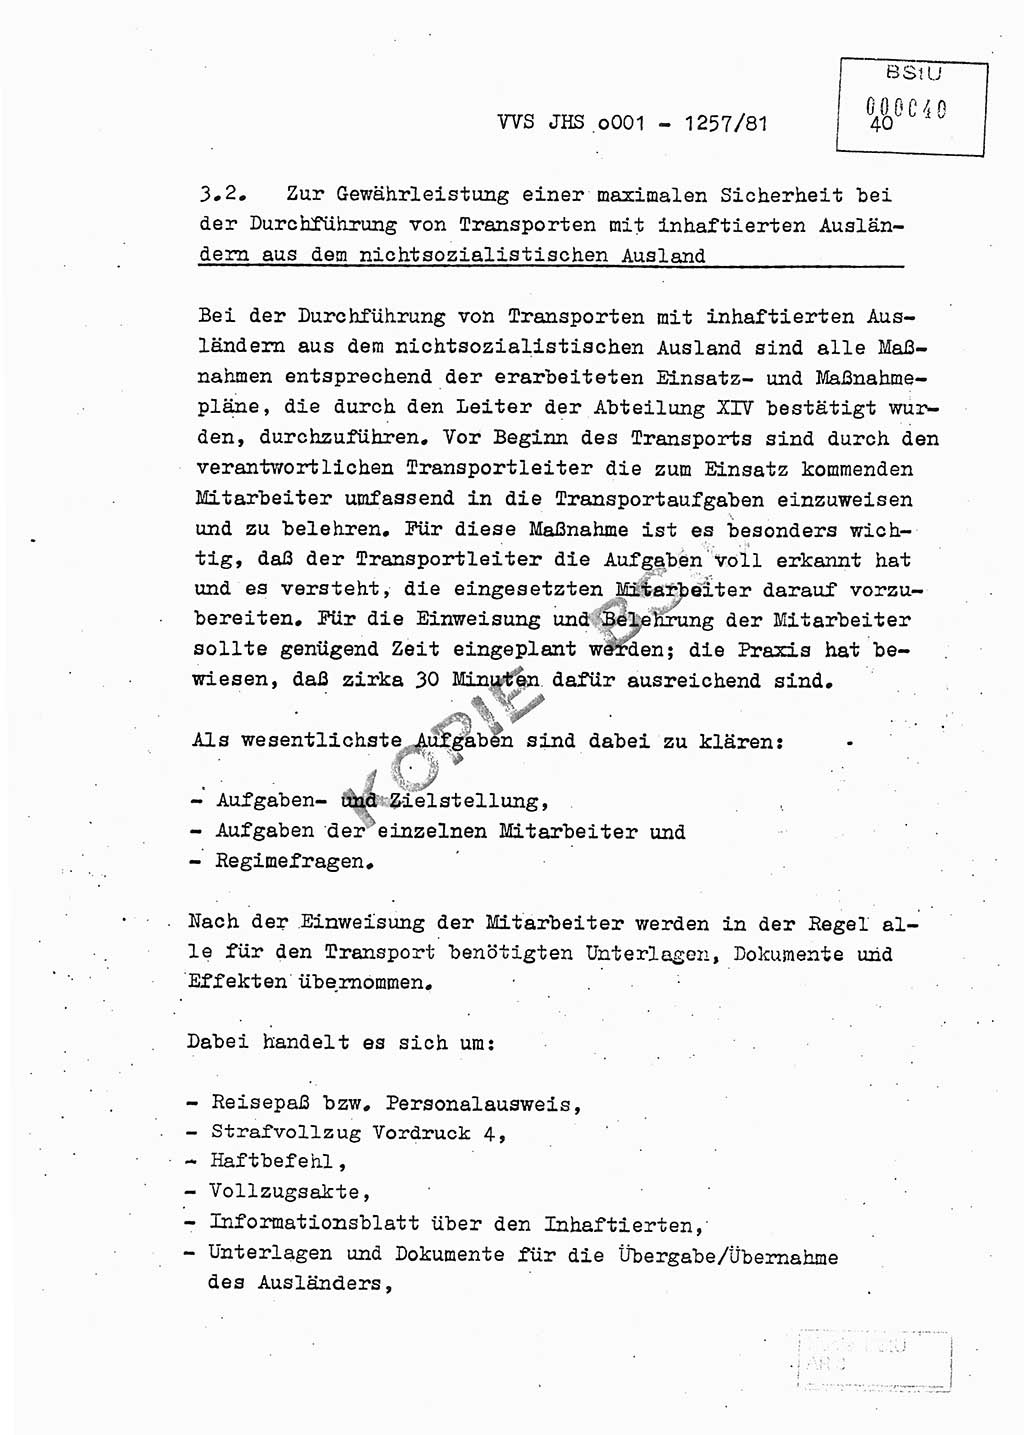 Fachschulabschlußarbeit Unterleutnant Dieter Möller (BV Rst. Abt. ⅩⅣ), Ministerium für Staatssicherheit (MfS) [Deutsche Demokratische Republik (DDR)], Juristische Hochschule (JHS), Vertrauliche Verschlußsache (VVS) o001-1257/81, Potsdam 1982, Seite 40 (FS-Abschl.-Arb. MfS DDR JHS VVS o001-1257/81 1982, S. 40)